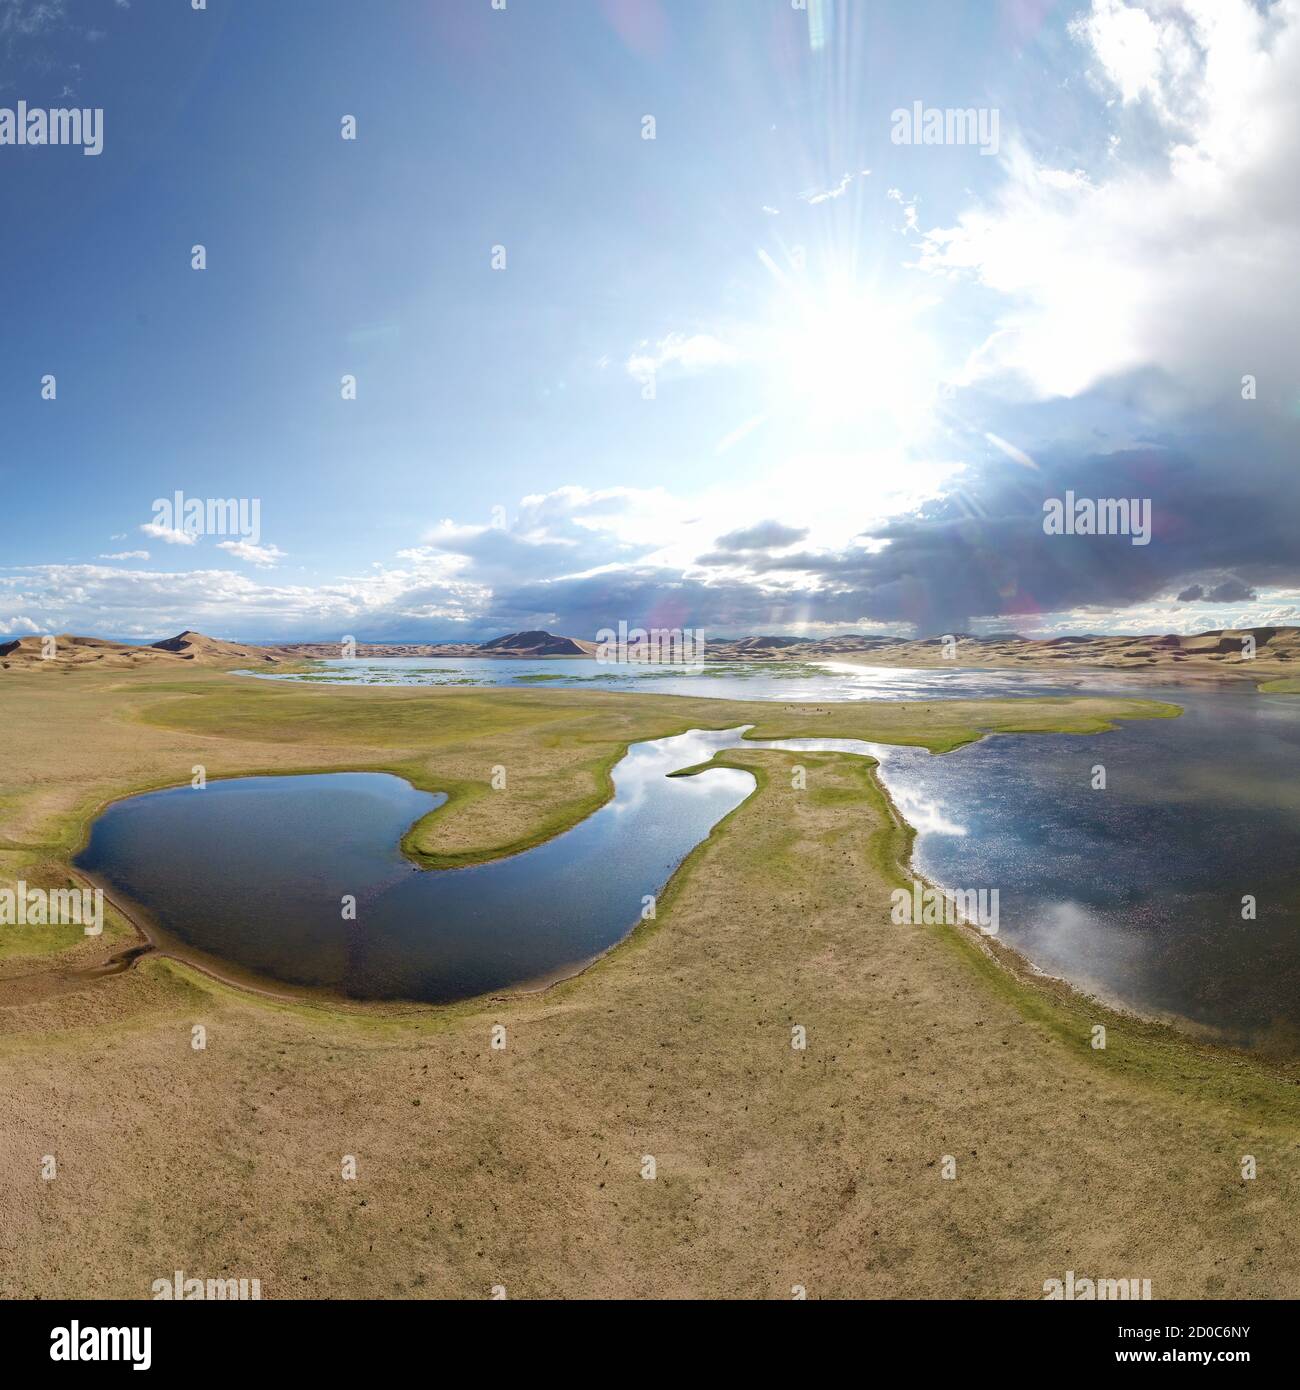 Ein großer See am Rande einer sandigen Wüste. Mongolei sandige Dünenwüste Mongolen Els. Provinz Khovd, Westmongolei. Stockfoto